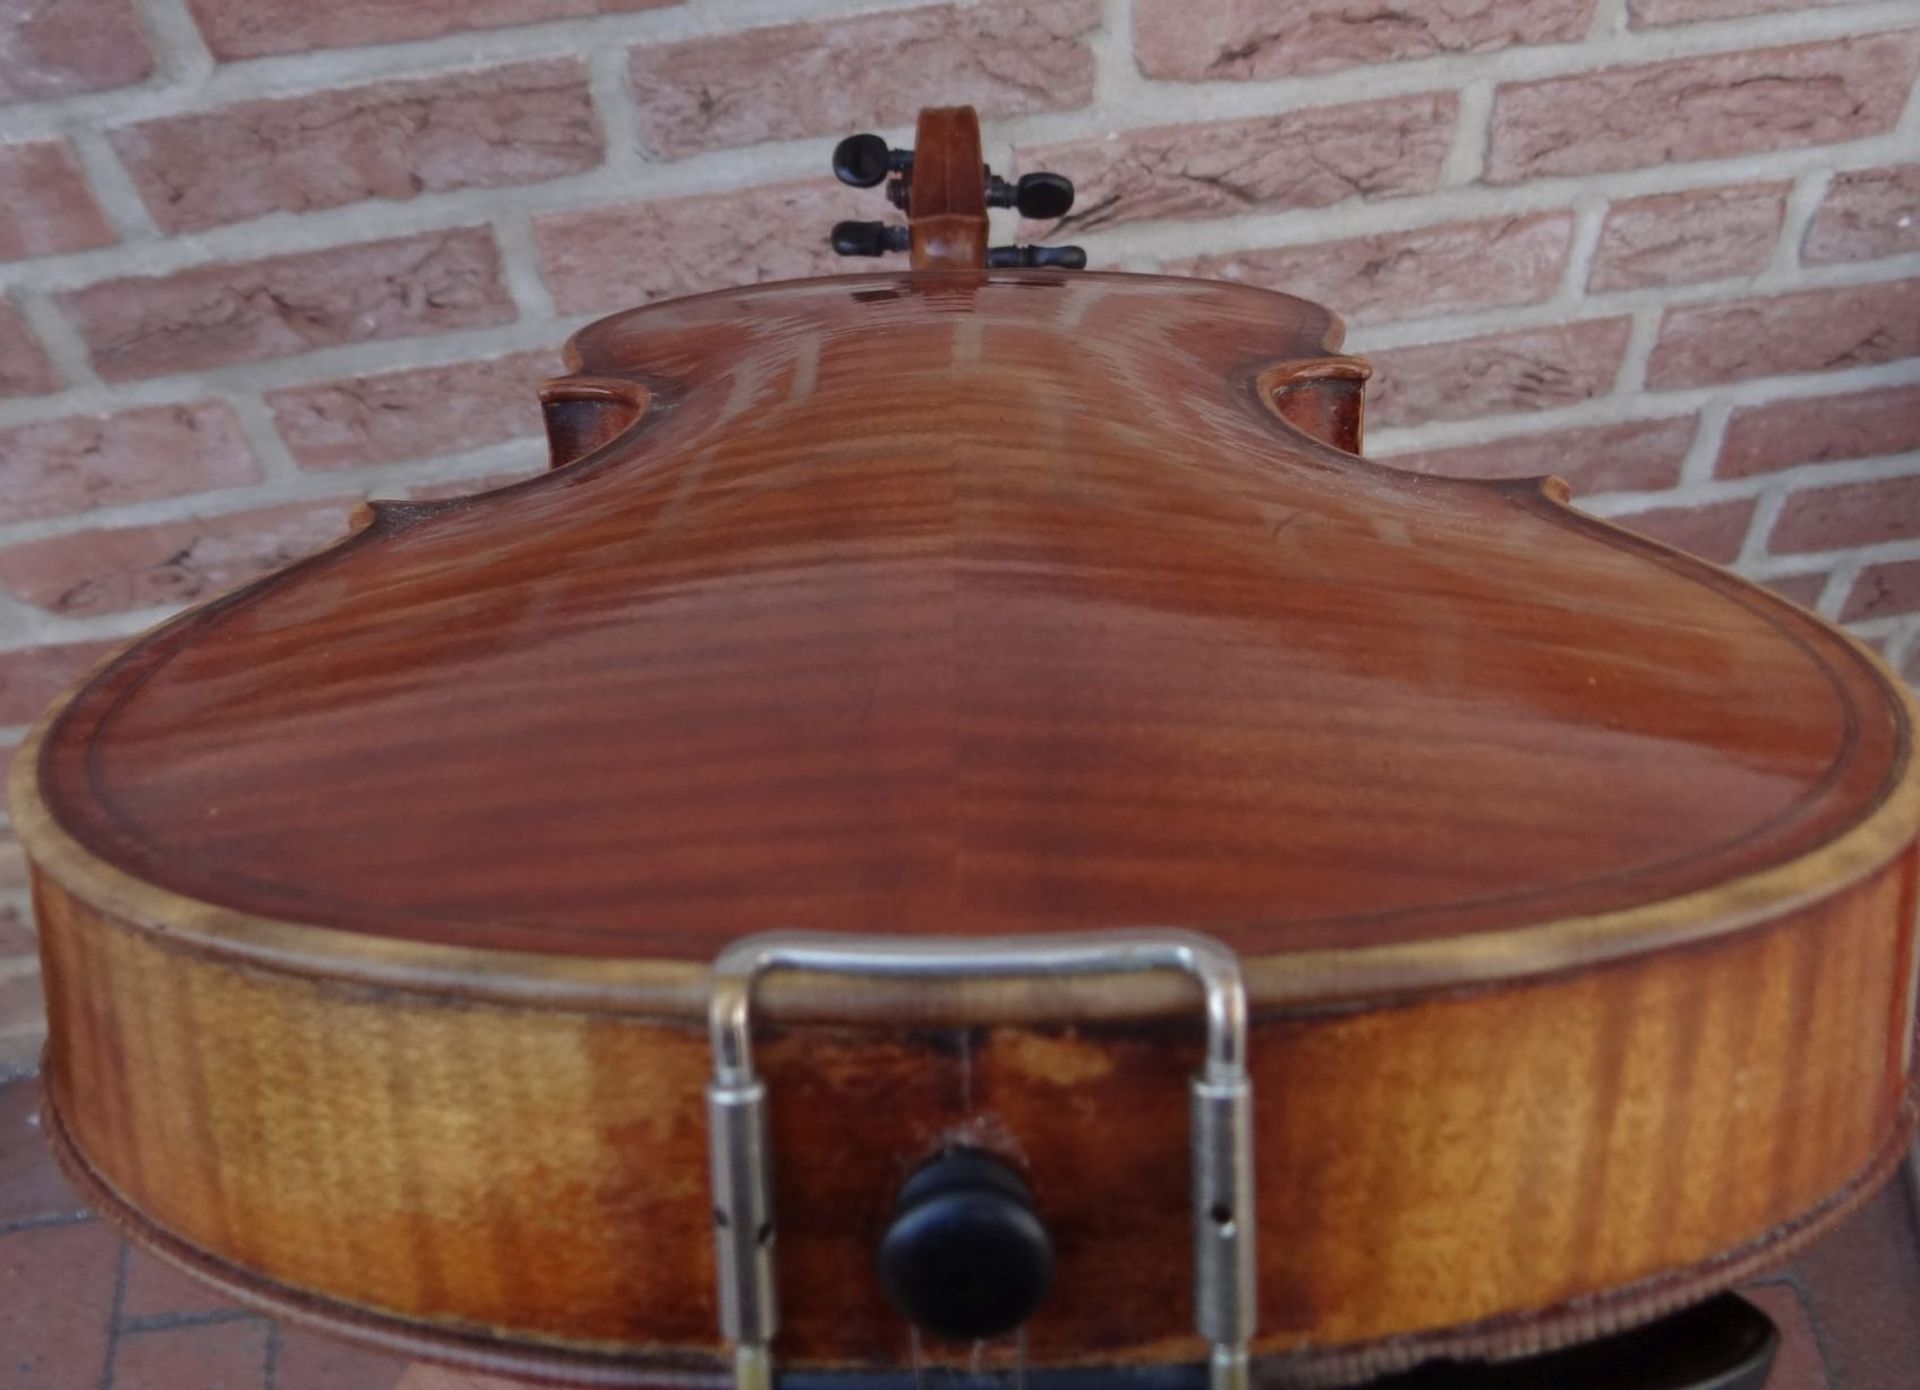 alte Geige im Koffer, innen Etikett "Ciovan Paolo Meggine", 19/20 Jhd?, L-62 cm, gut erhalten - Bild 8 aus 10